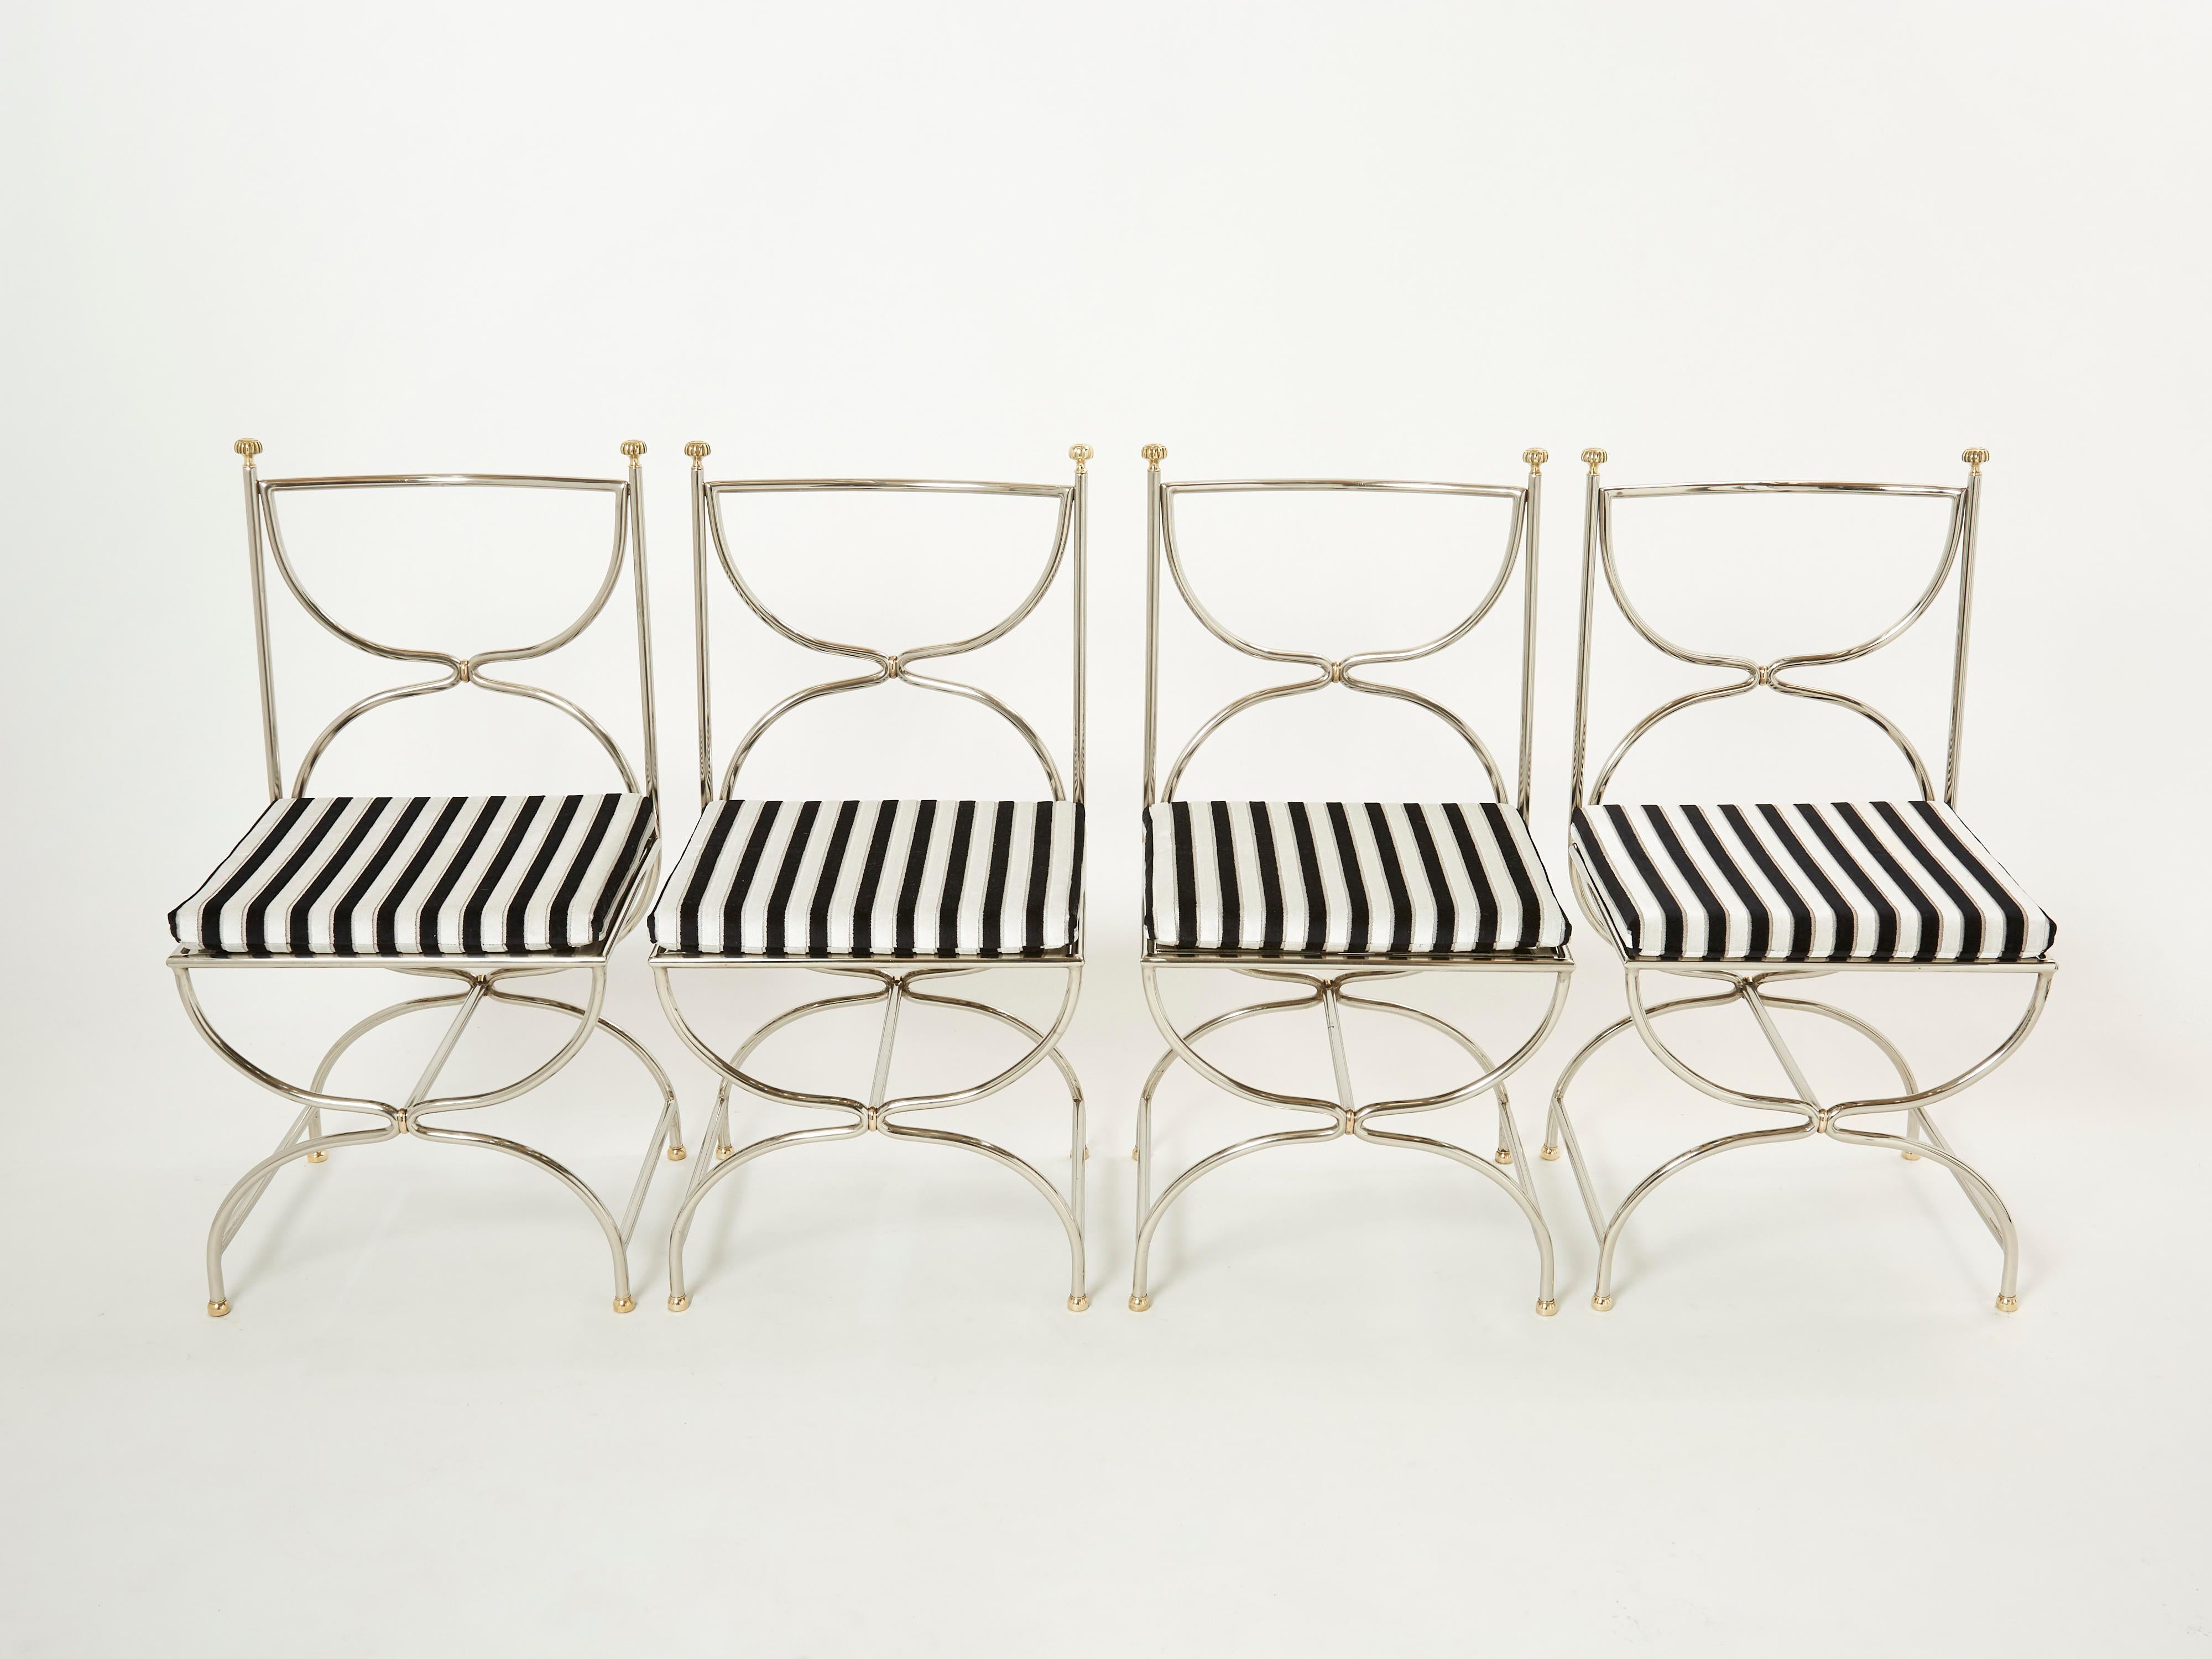 Magnifique ensemble de chaises Curule Savonarola des années 1960 en acier inoxydable lourd avec des accents en laiton. Cet incroyable ensemble de douze chaises a été créé par le cabinet d'architecture d'intérieur français Maison Jansen. La structure